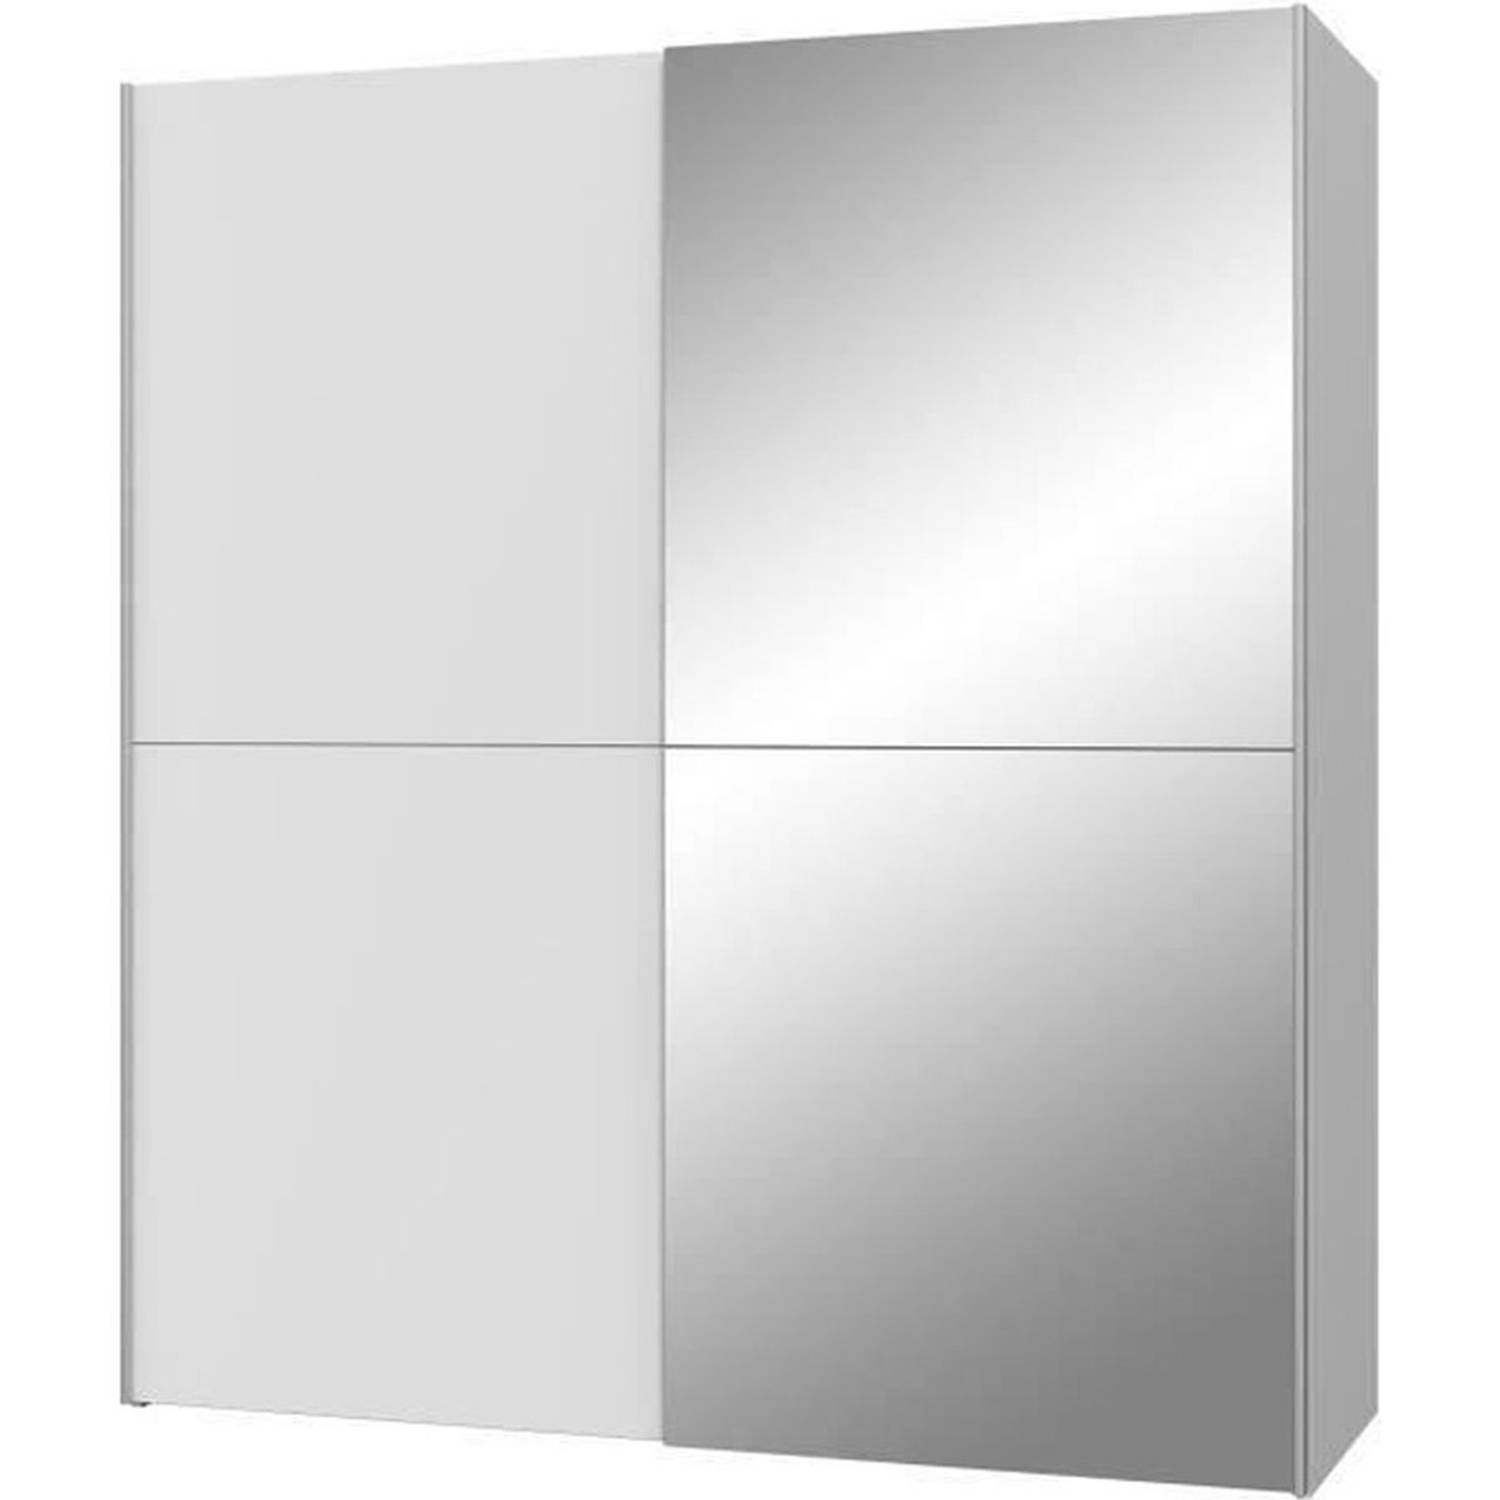 ULOS Kledingkast met 2 schuifdeuren + spiegel Mat wit L 170.3 x D 61.2 x H 190.5 cm